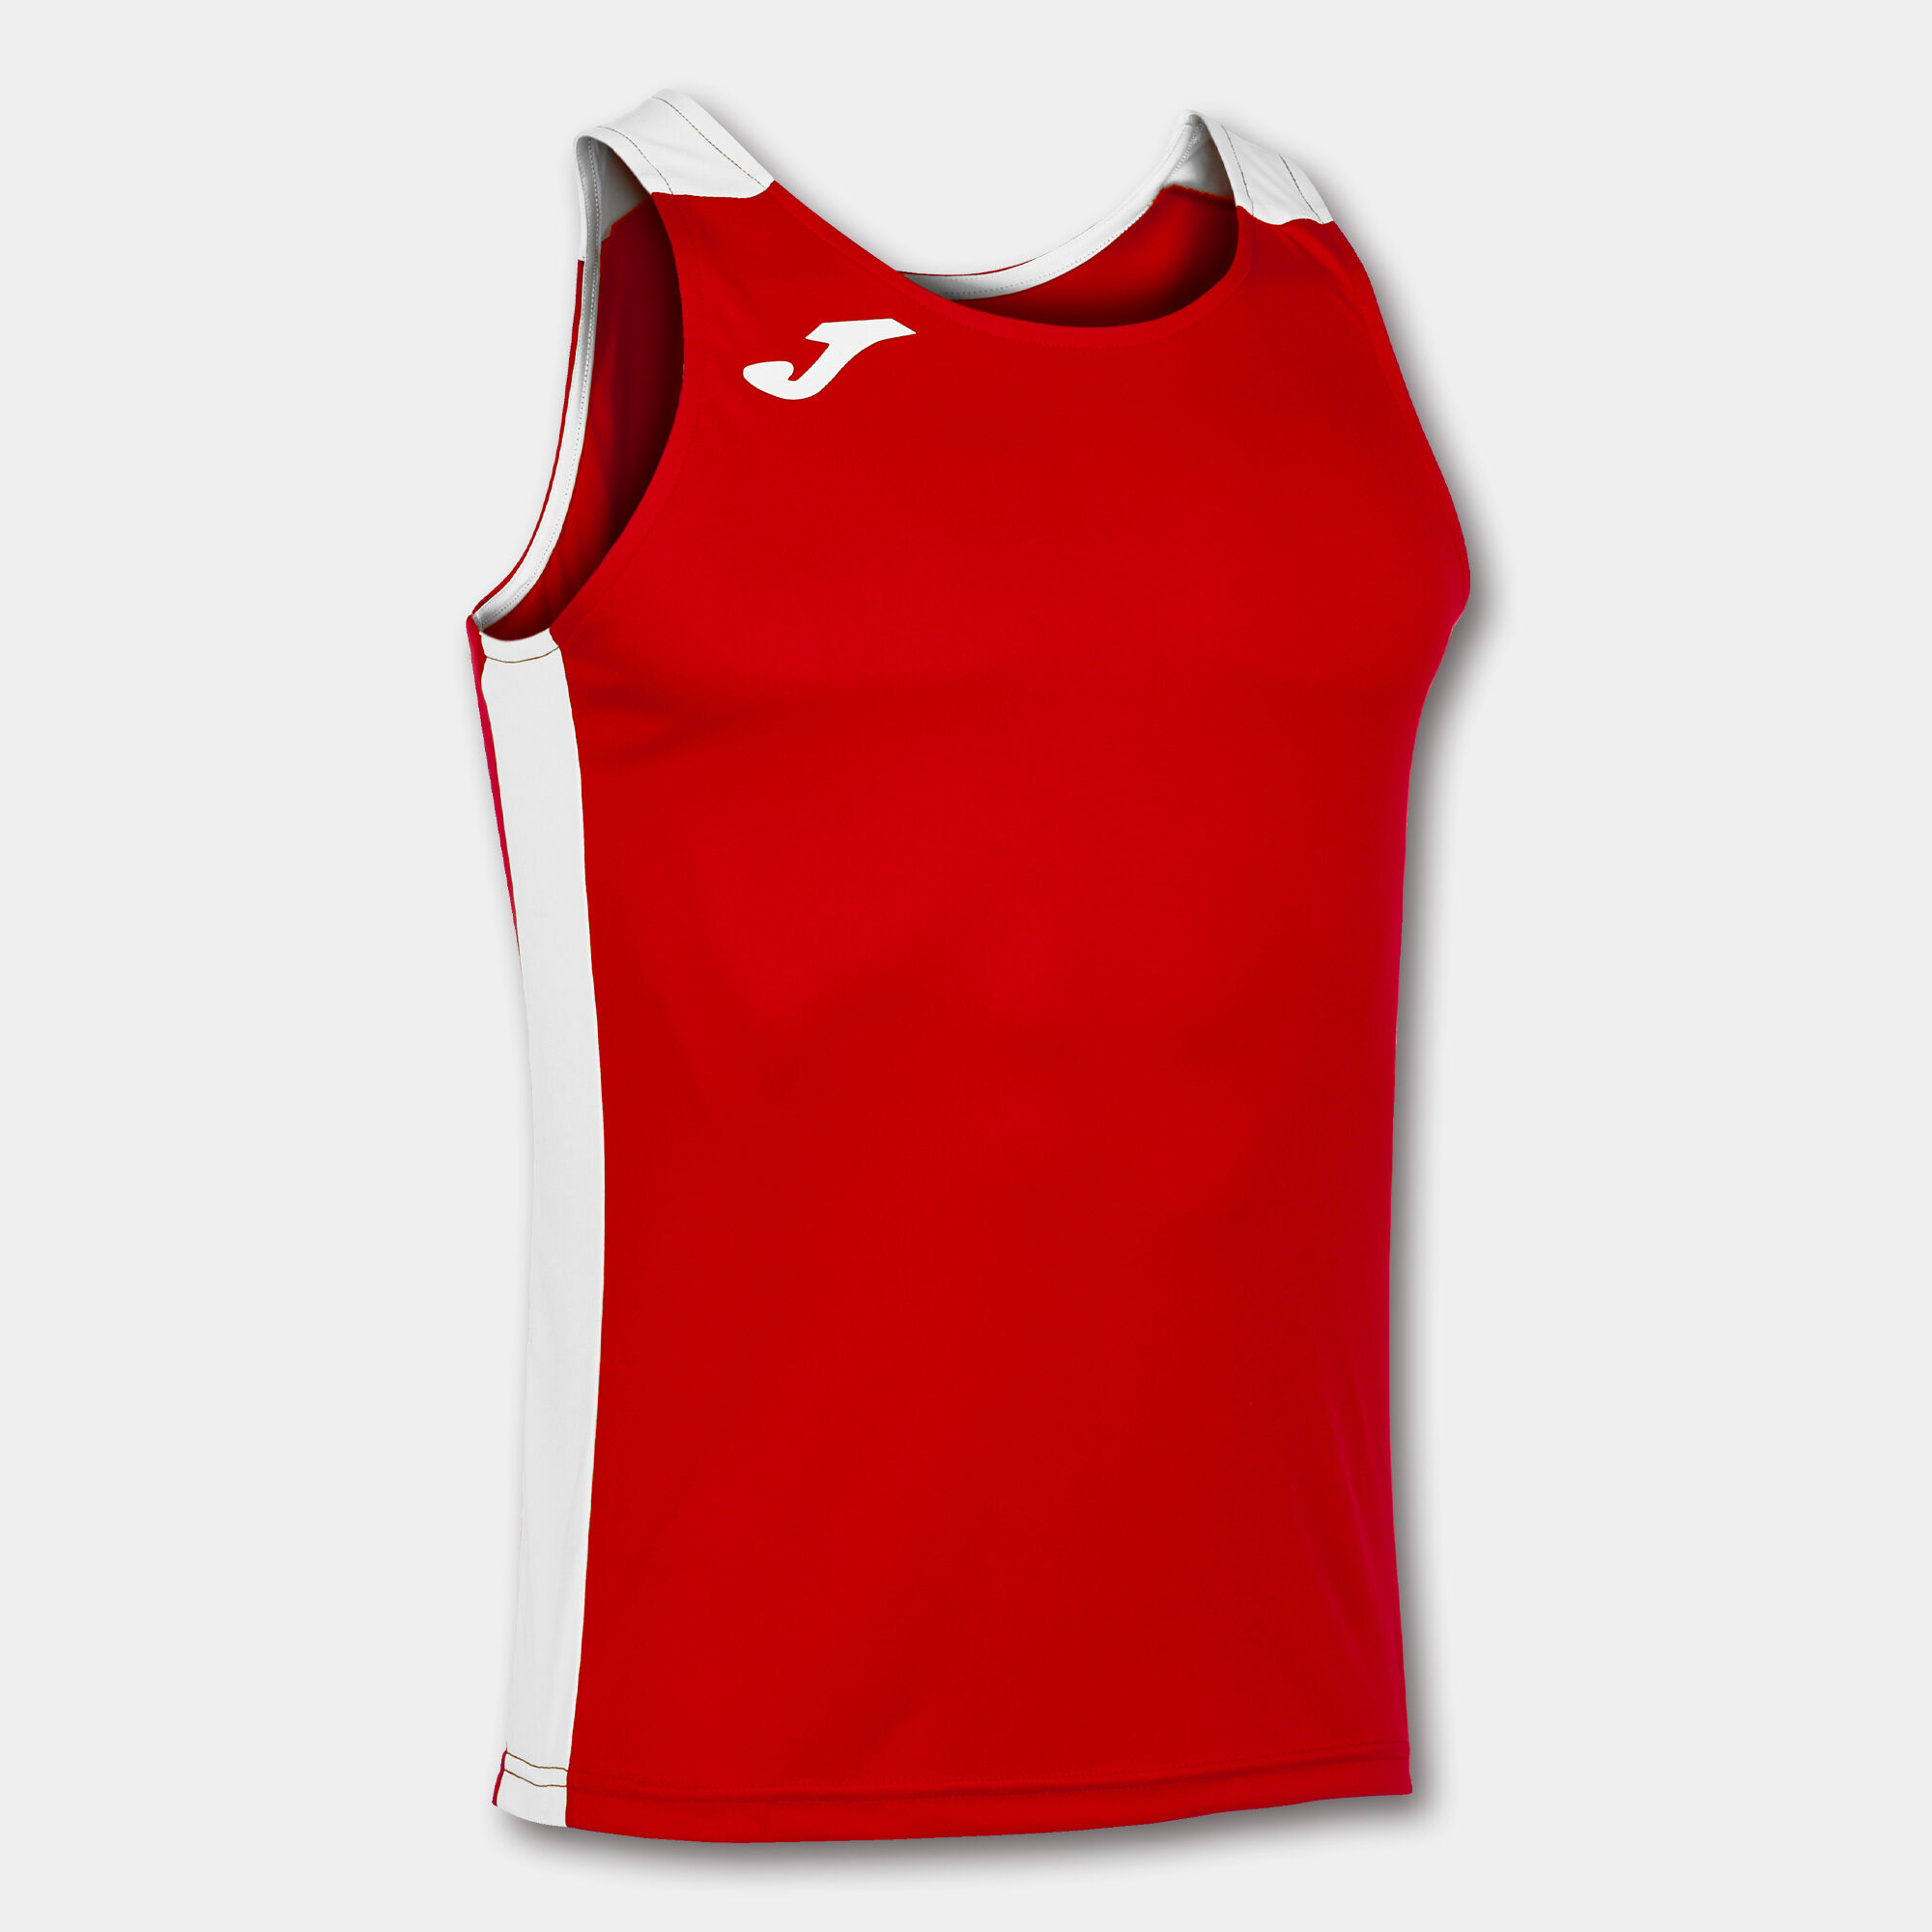 Schulterriemen-shirt mann Record II rot weiß